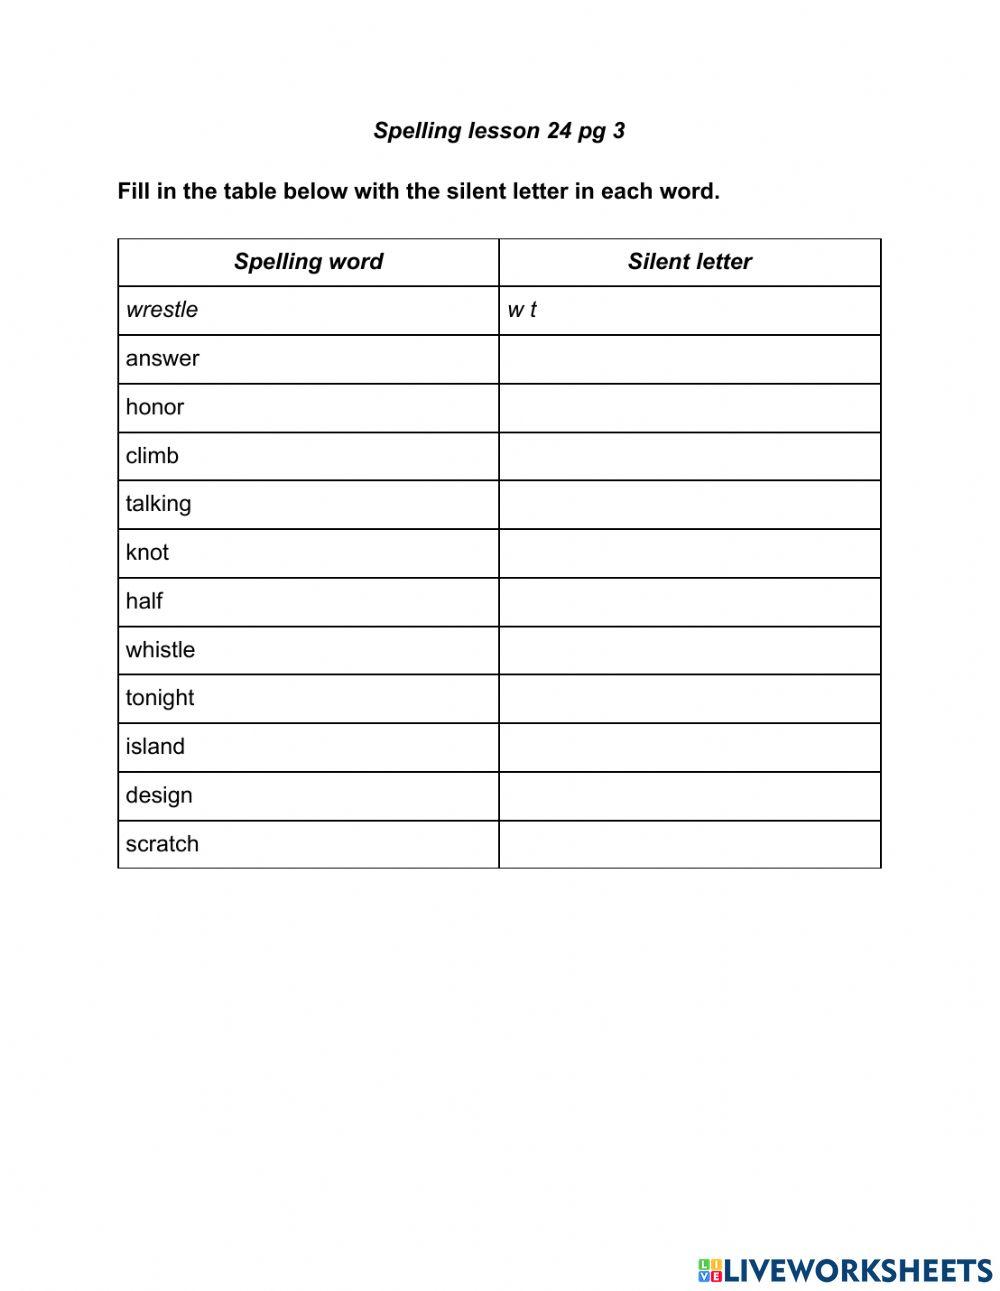 Spelling lesson 24 pg 3